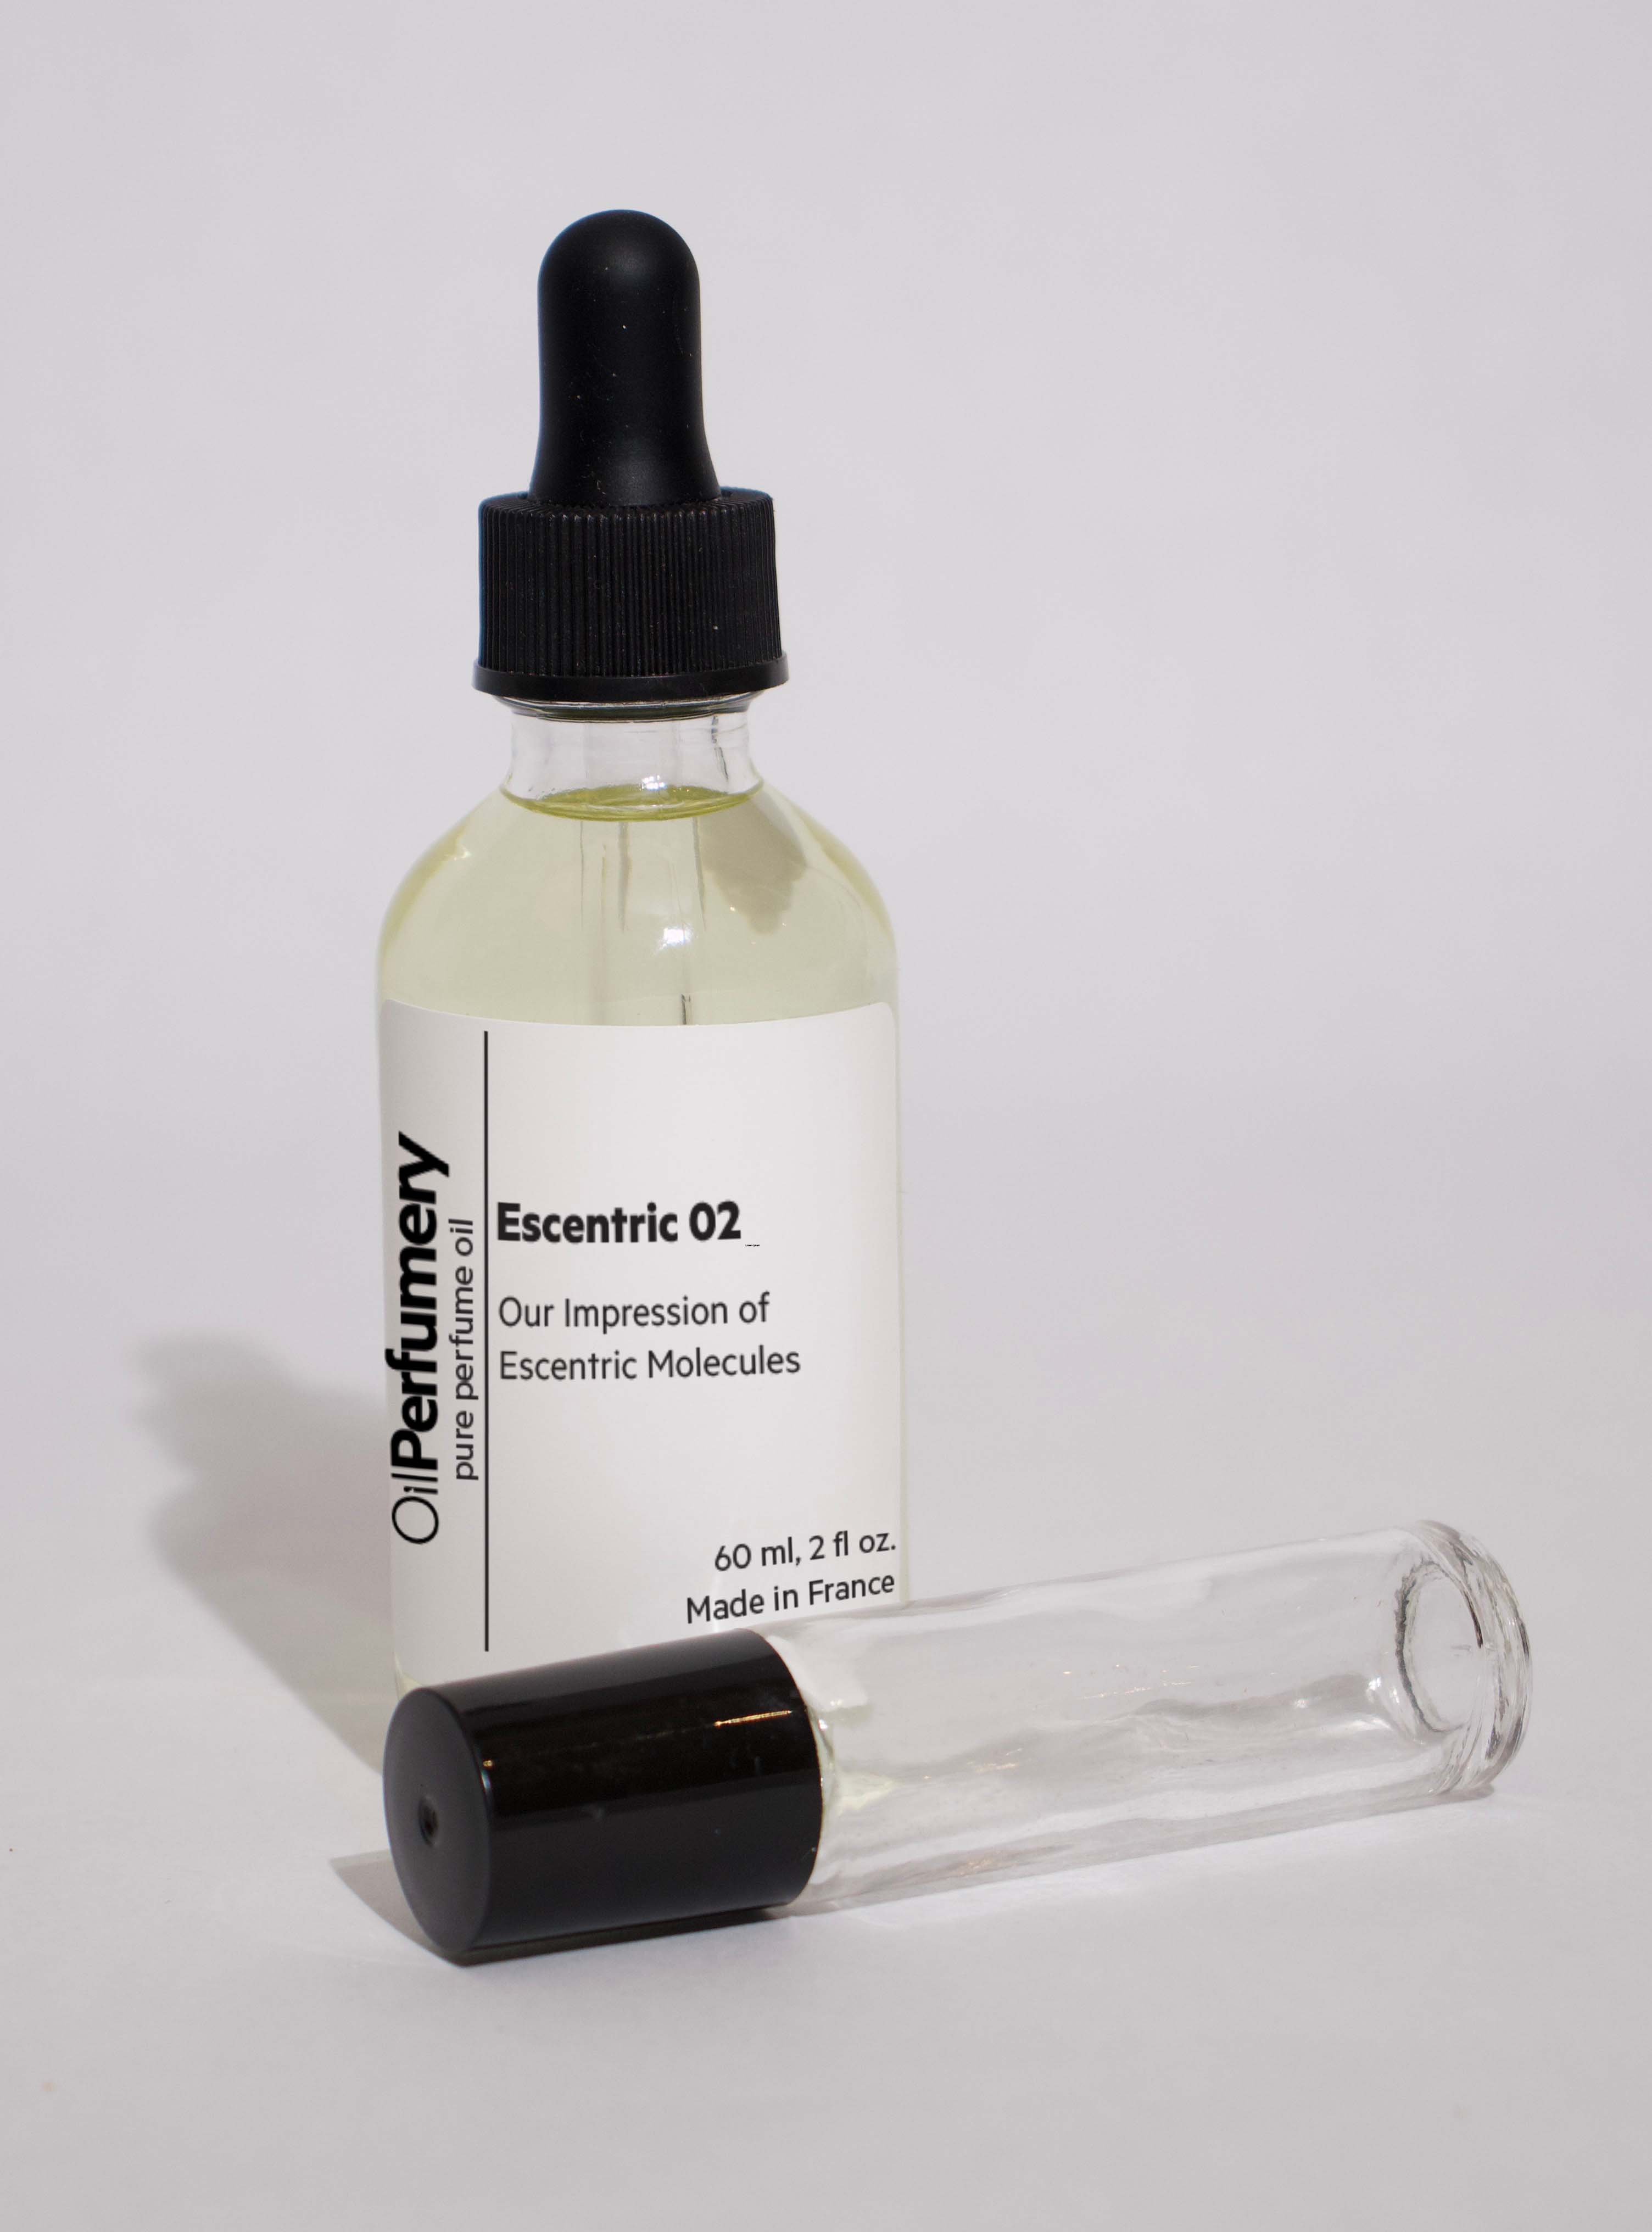 Oil Perfumery Impression of Escentric Molecules - Escentric 02